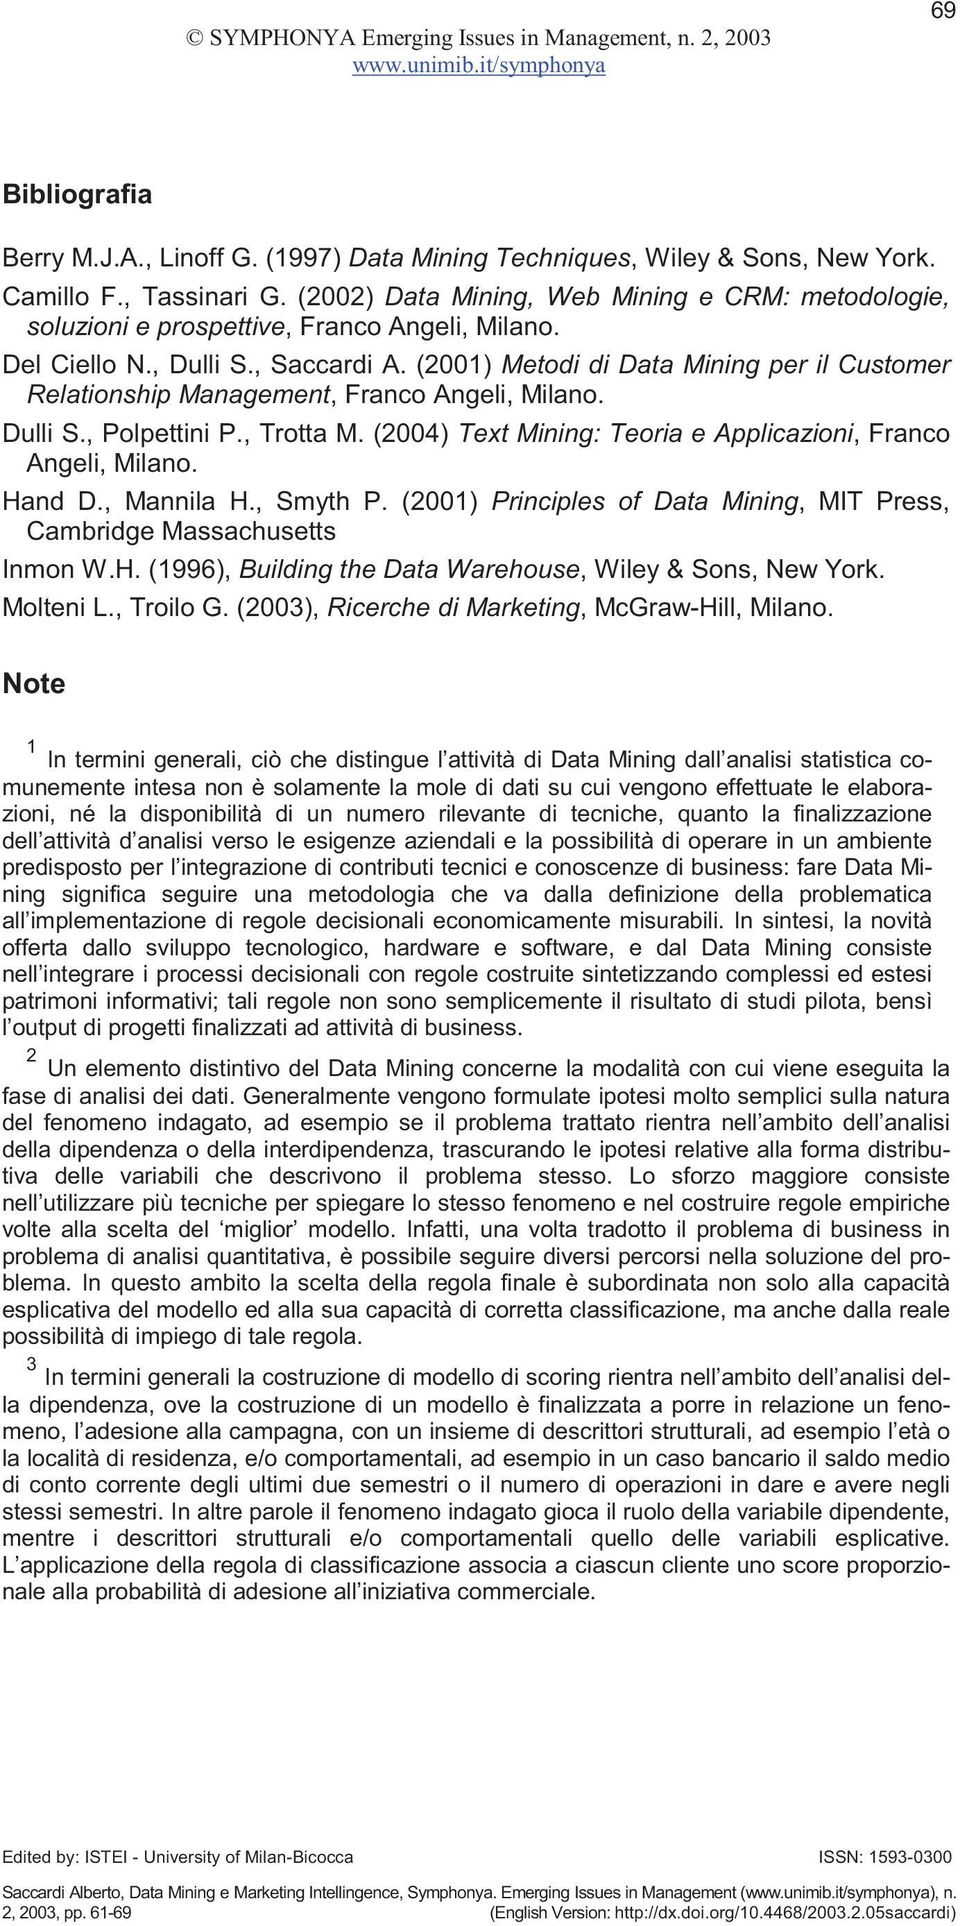 (2001) Metodi di Data Mining per il Customer Relationship Management, Franco Angeli, Milano. Dulli S., Polpettini P., Trotta M. (2004) Text Mining: Teoria e Applicazioni, Franco Angeli, Milano.